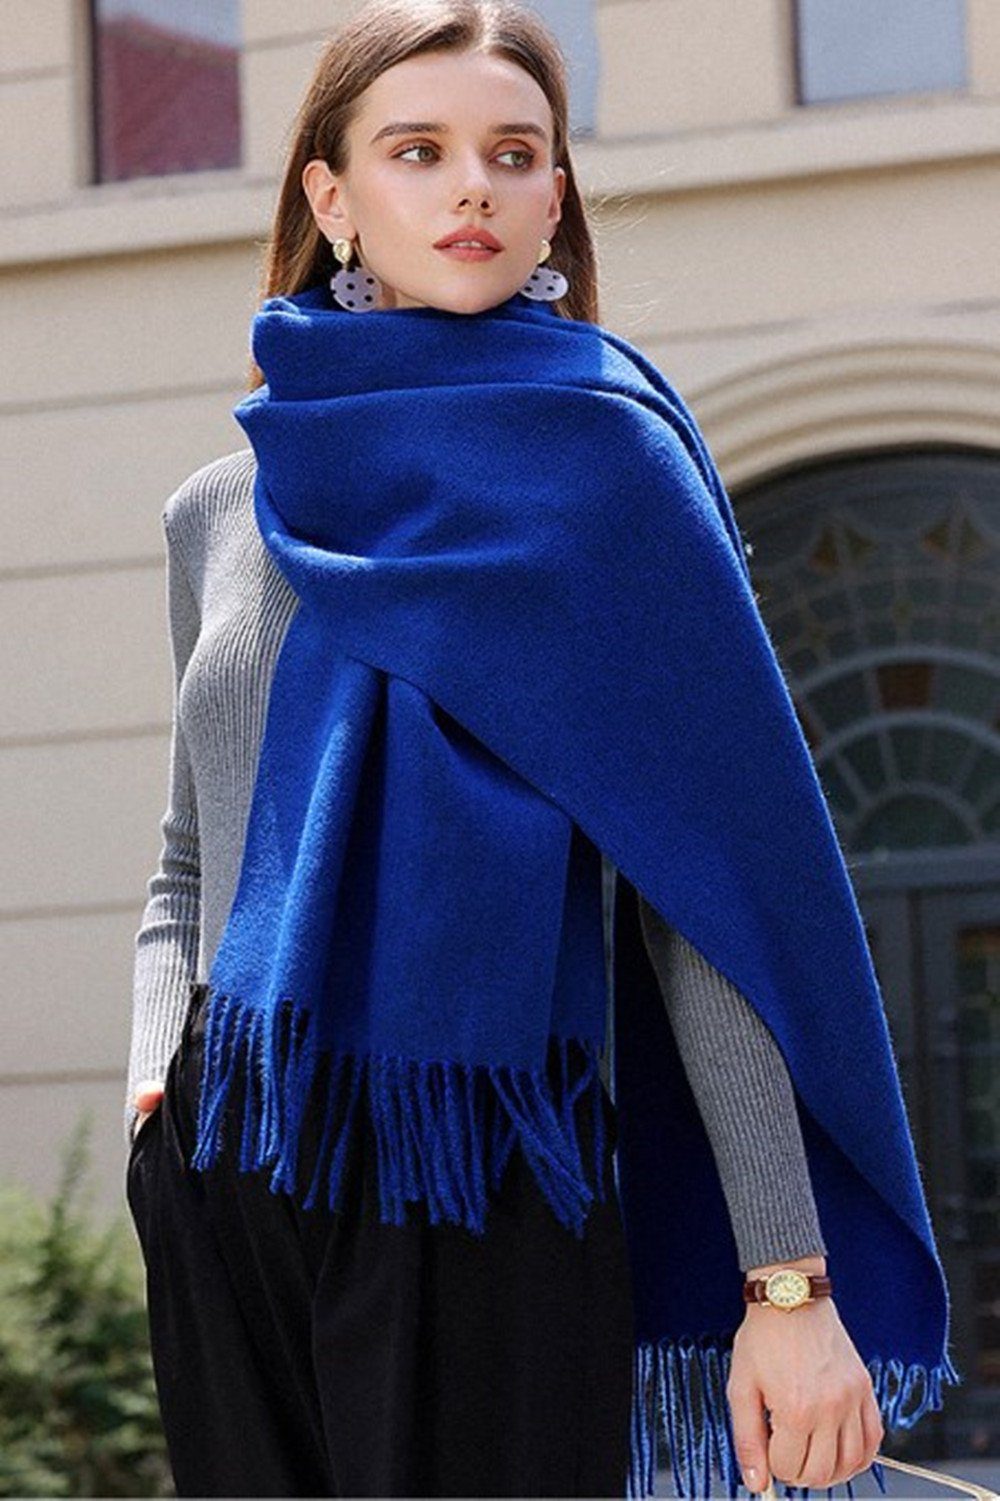 XDeer Modeschal Damen Schal,kuschelweich,Winter Schal Poncho Qualität,Neuer Stil, Damen Halstuch Geschenk für Frauen in verschiedenen Farben blue04